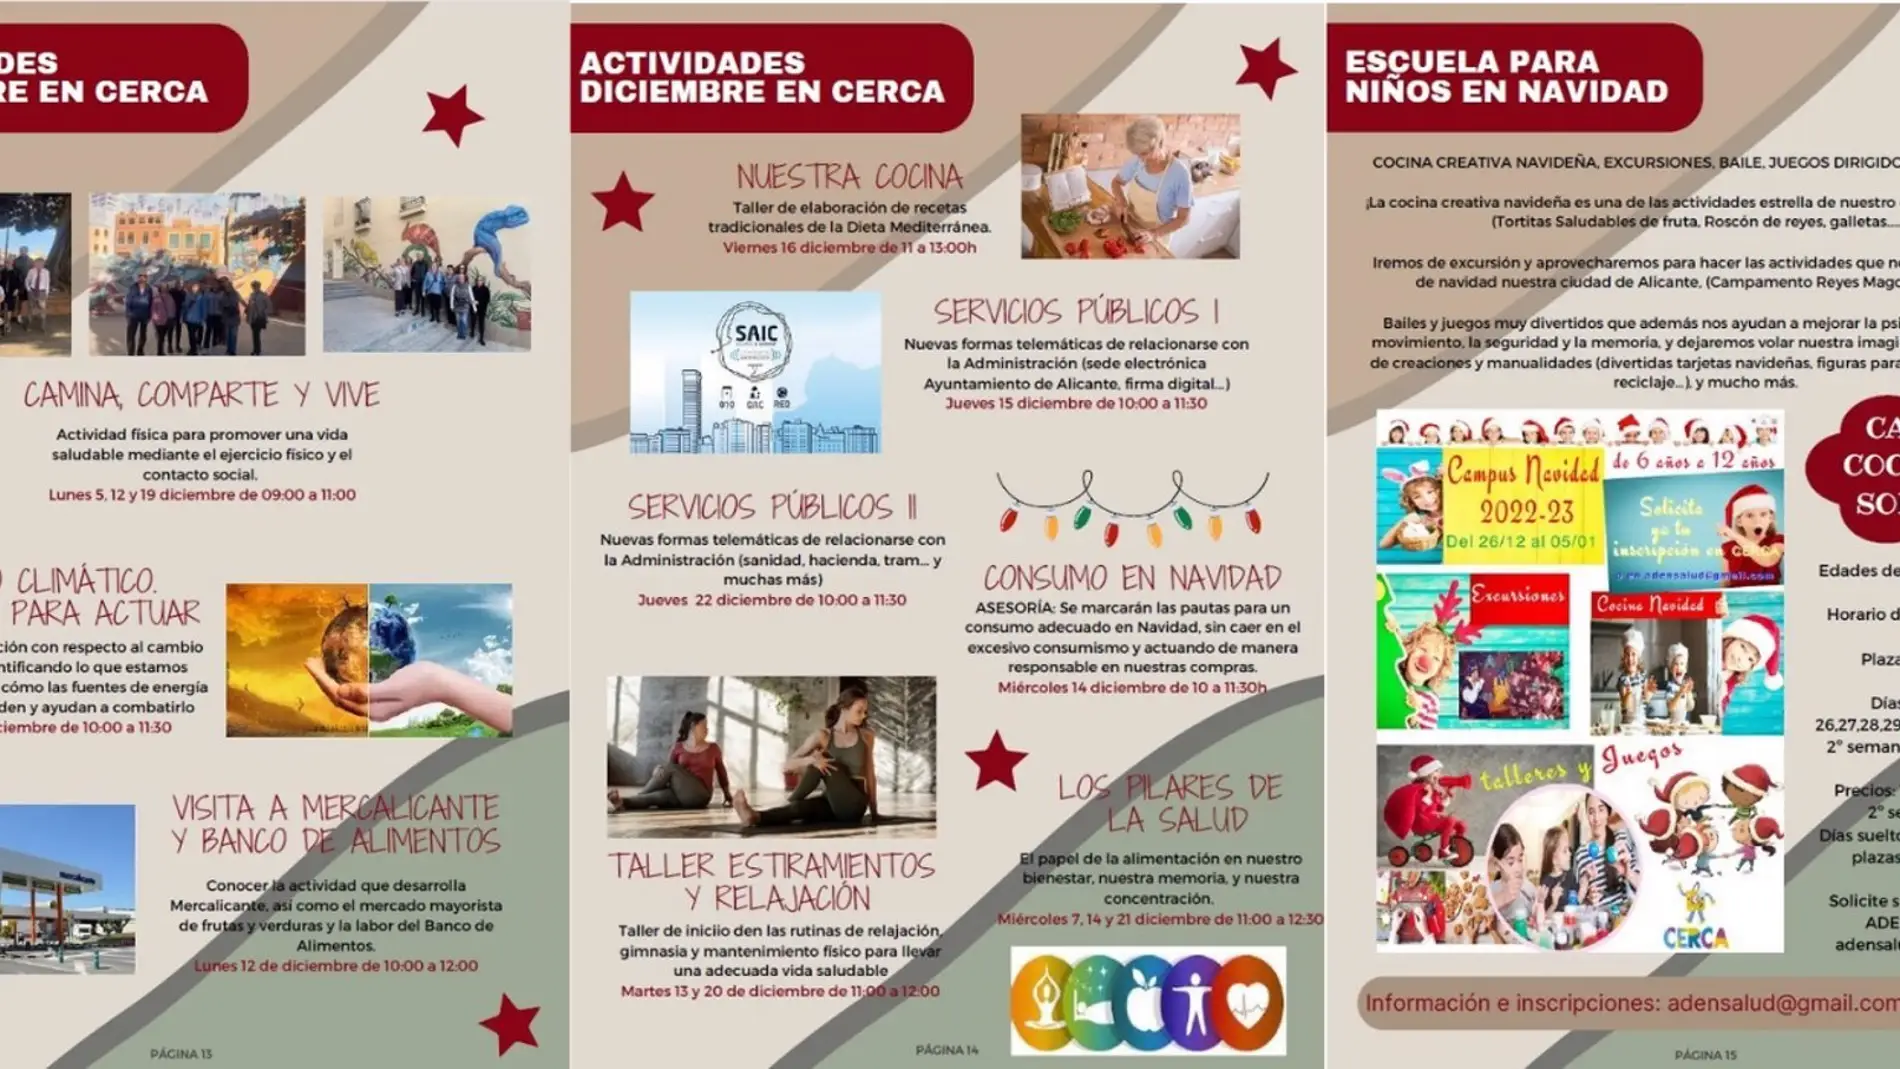 Nuevo programa formativo para niños con escuela de Navidad, taller de cocina y excursiones